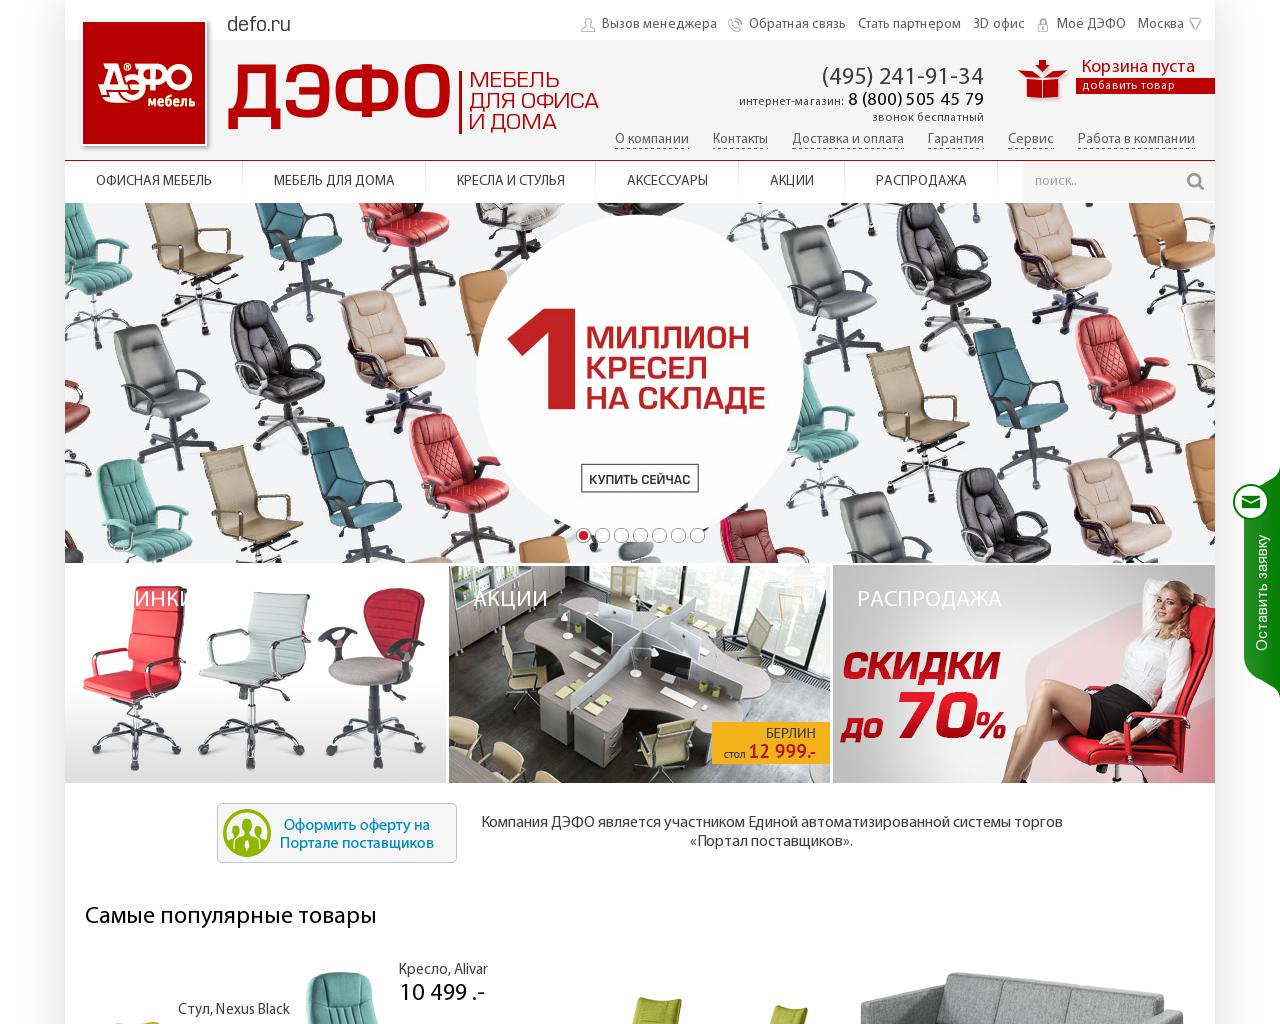 Изображение сайта defo.ru в разрешении 1280x1024